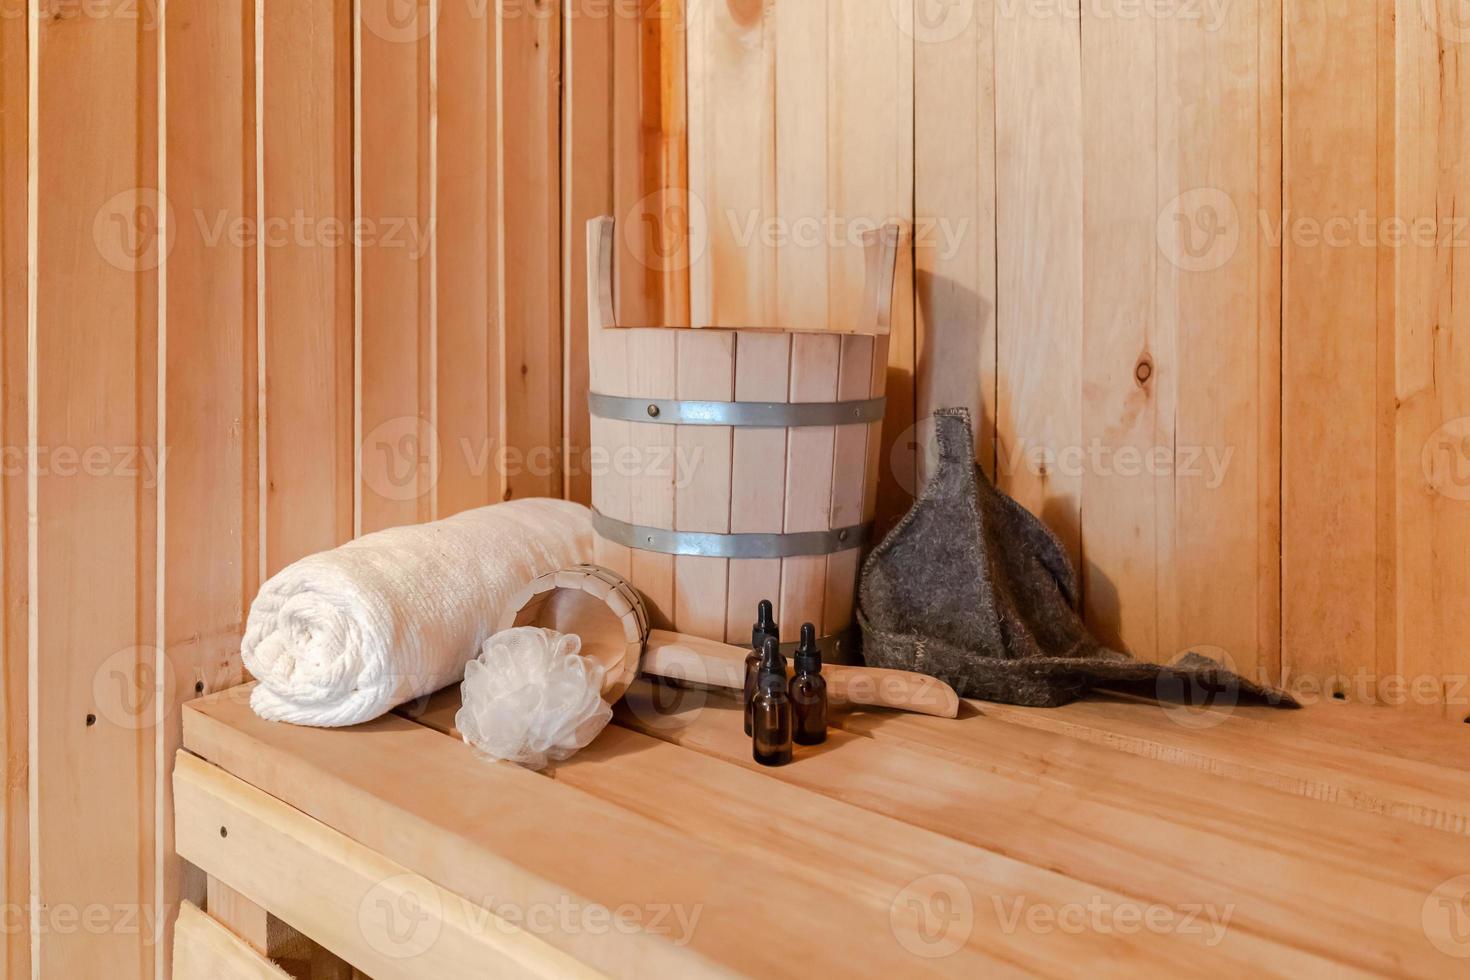 ancien concept de spa de bain traditionnel russe. détails intérieurs sauna finlandais hammam avec ensemble d'accessoires de sauna traditionnel bassin serviette arôme huile scoop feutre. Détendez-vous le concept de bain de village de campagne. photo